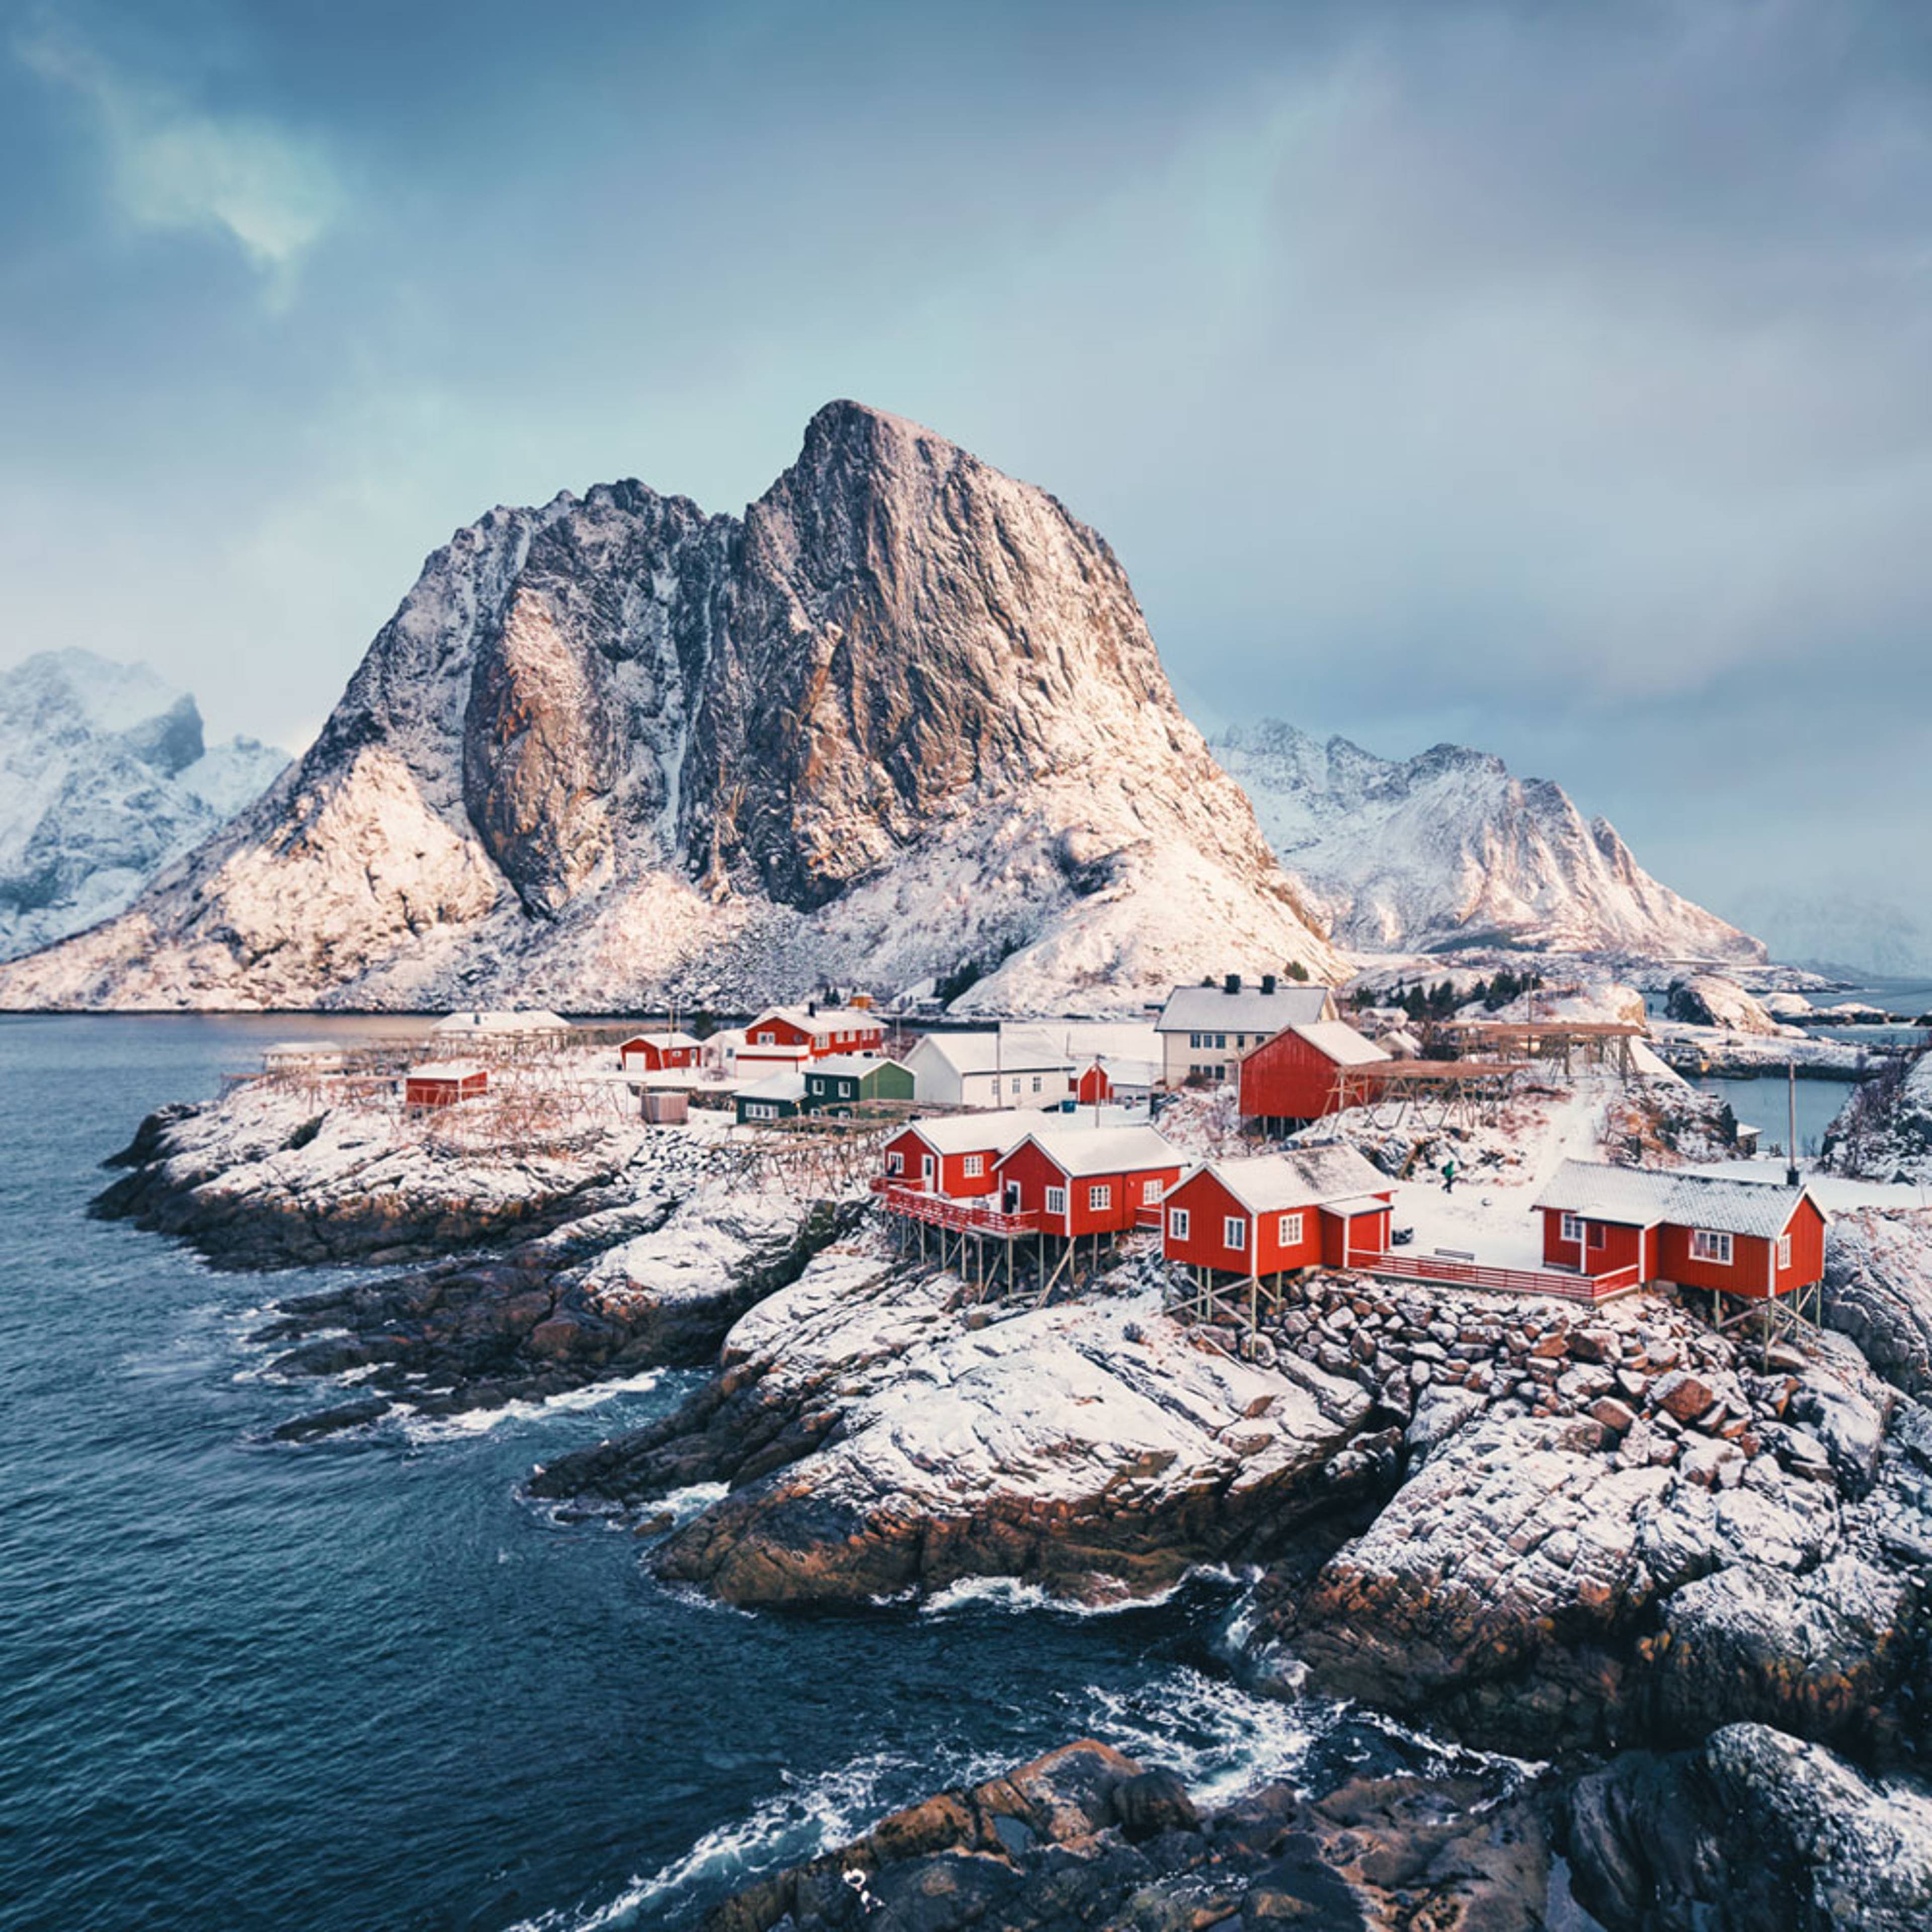 Co-créez votre voyage aux îles Lofoten et Vesterålen en Norvège